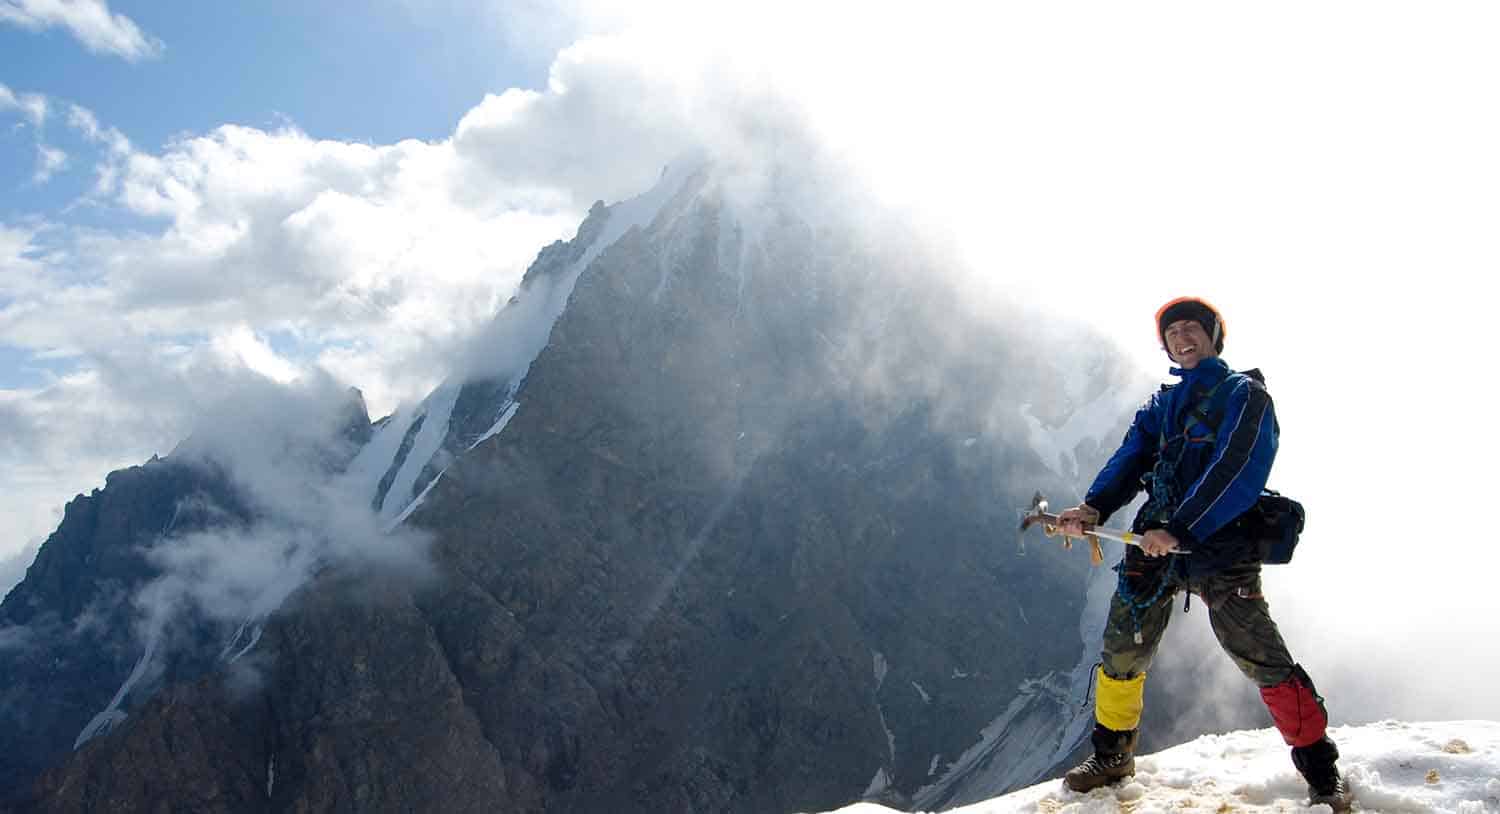 Conheça o ice climbing, o esporte radical cada vez mais praticado no mundo por pessoas amadoras e profissionais